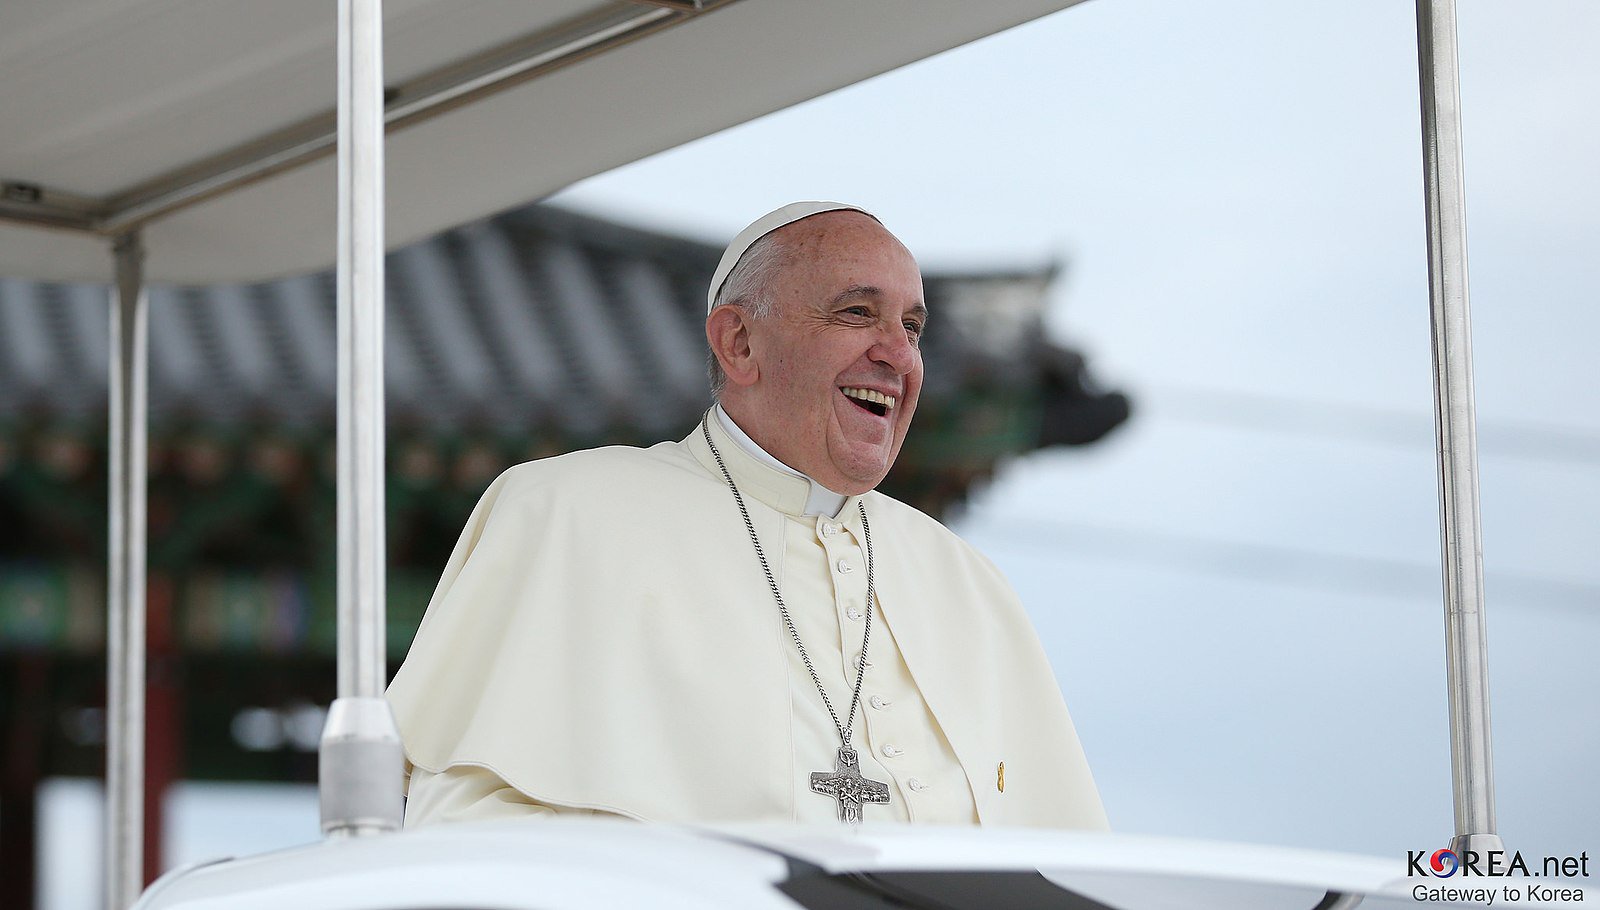 Papež František slaví 10 let pontifikátu s kardinály a podcasty